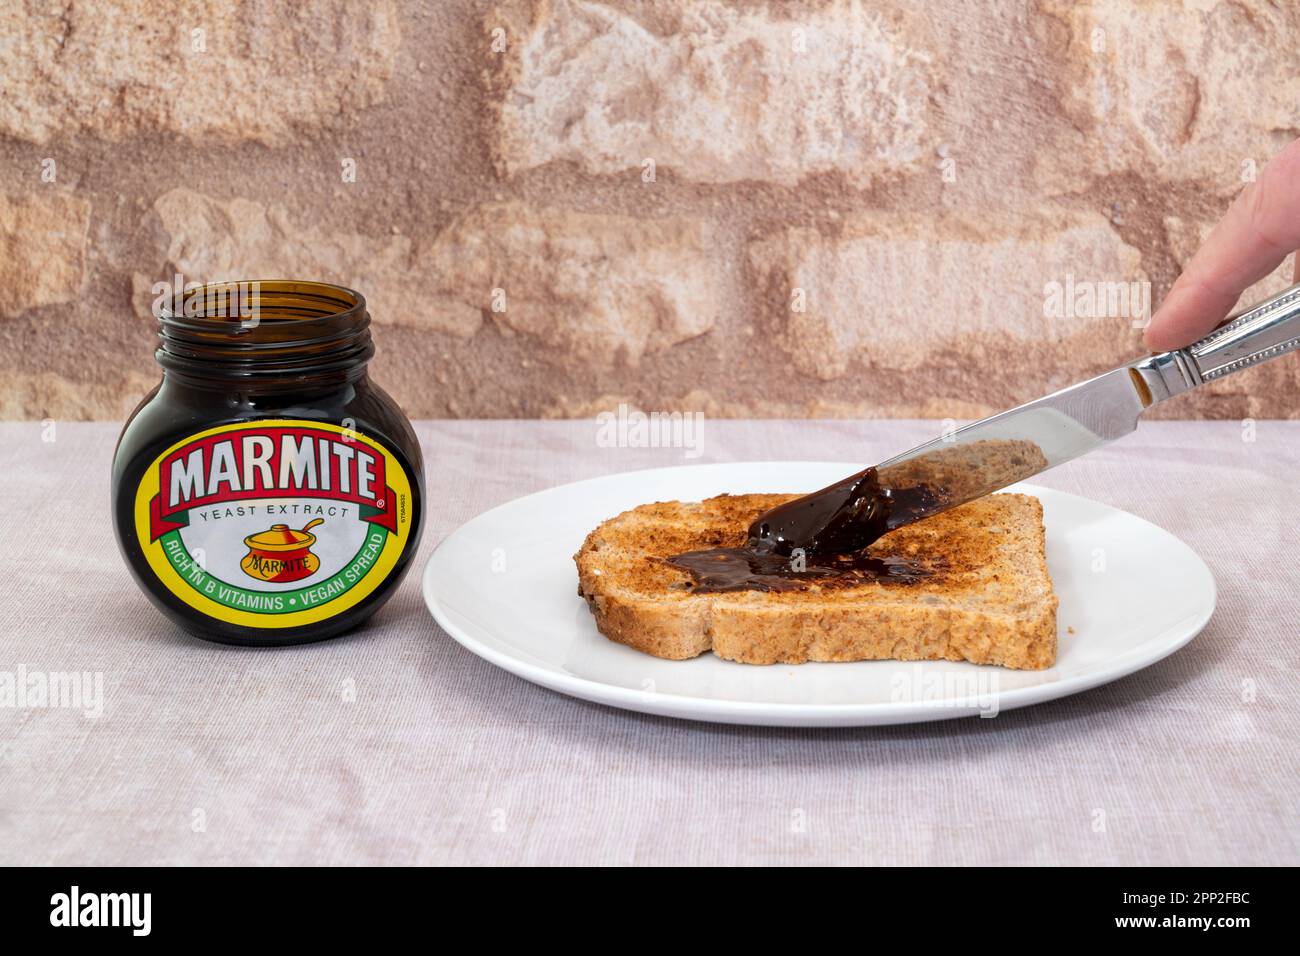 London, Vereinigtes Königreich - 21. März 2023 : Marmite wird auf einer Scheibe getoastetes Brot gestreut. Marmite ist ein Hefeextrakt, der reich an Vitamin B ist Stockfoto